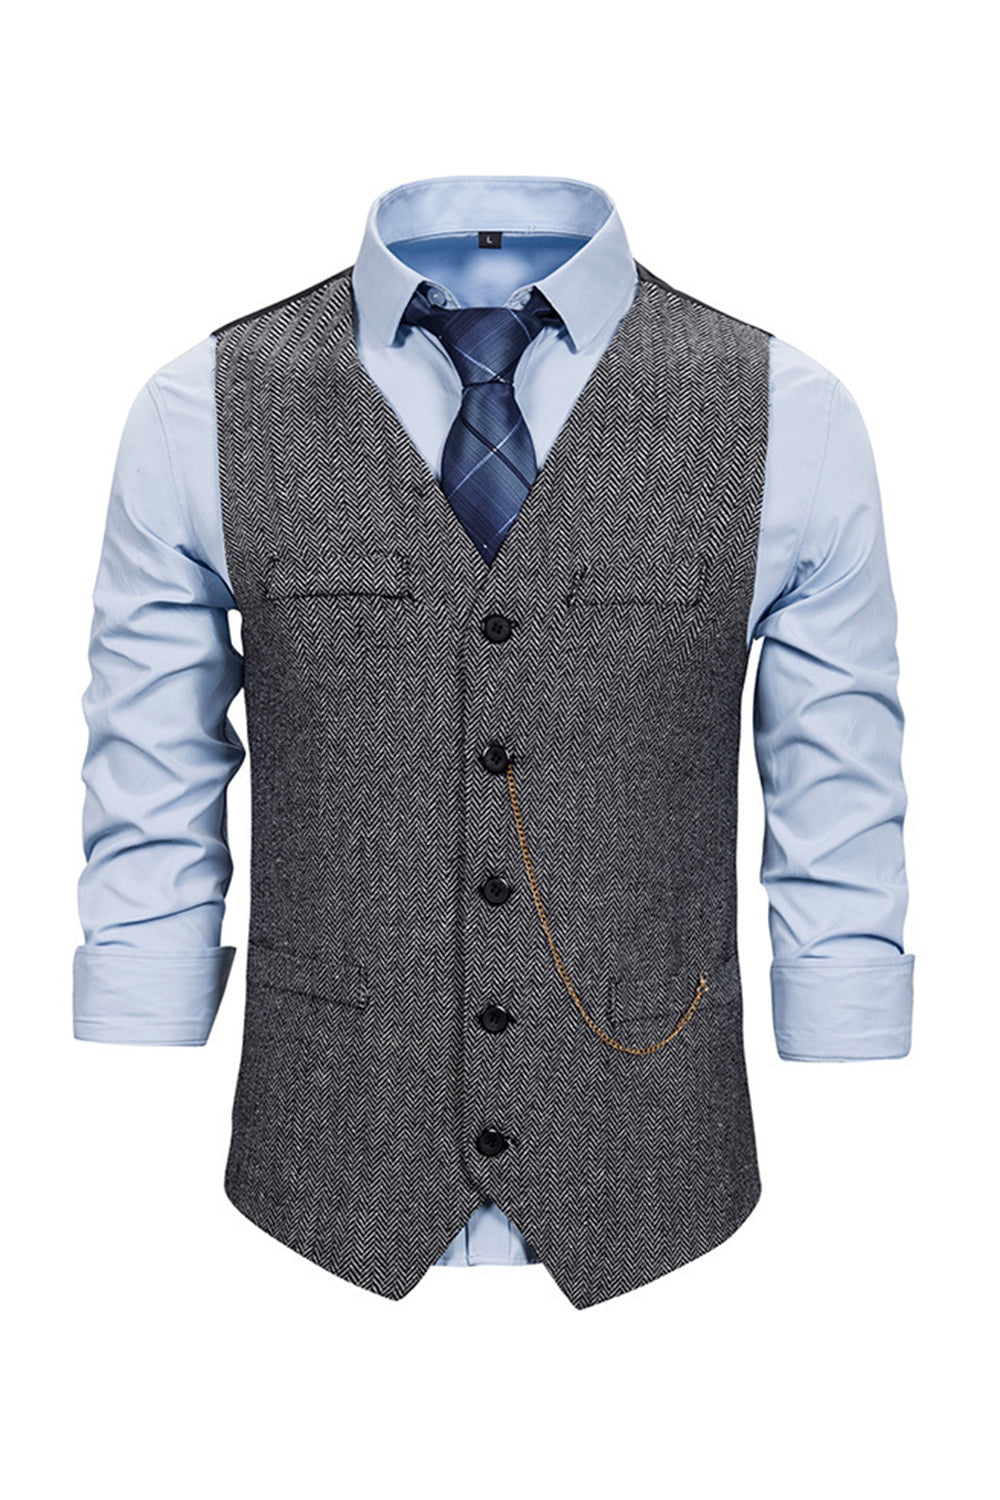 V Neck Single Breasted Men's Grey Casual Vest